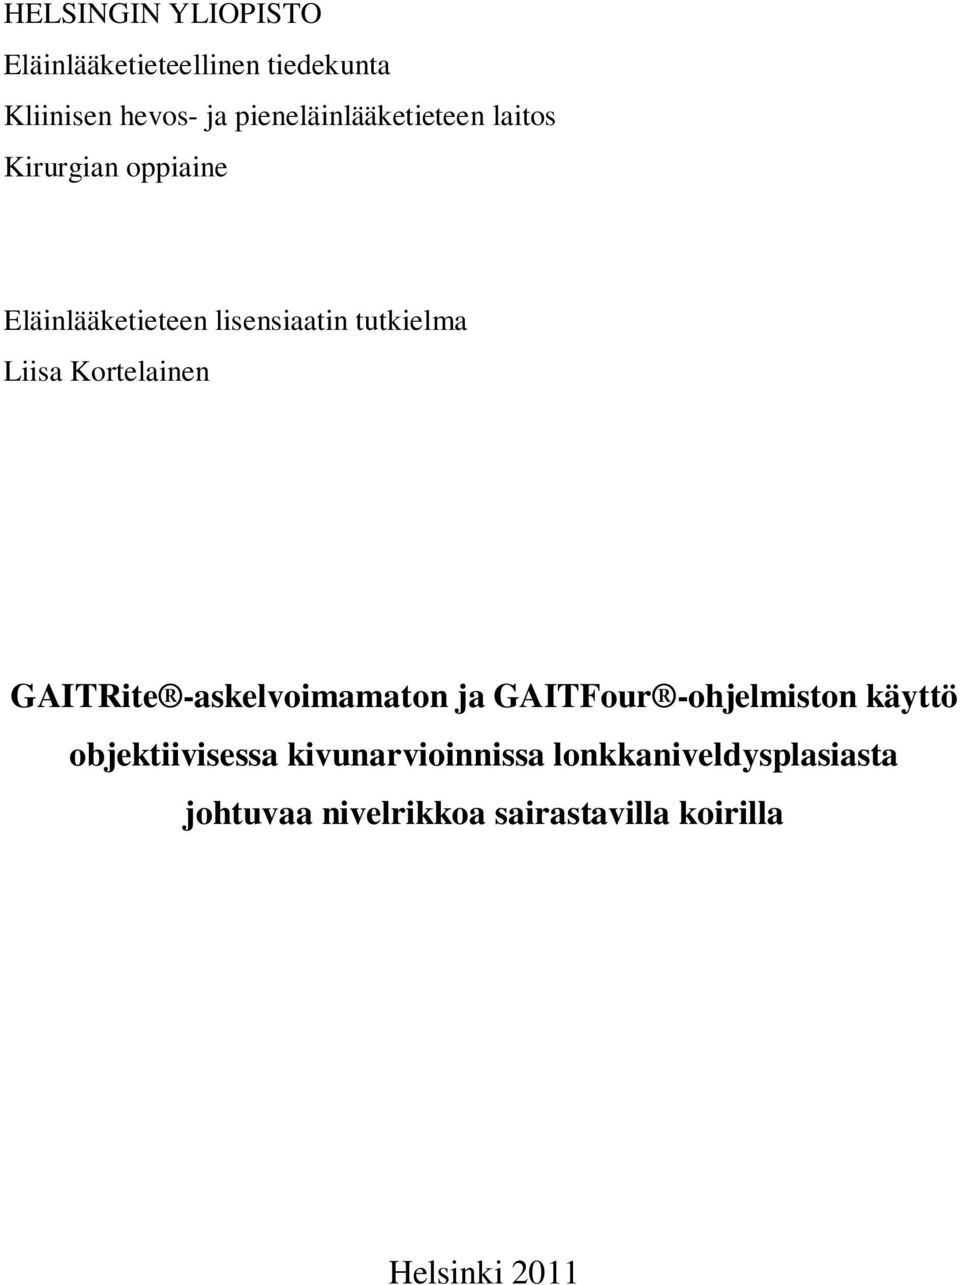 Liisa Kortelainen GAITRite -askelvoimamaton ja GAITFour -ohjelmiston käyttö